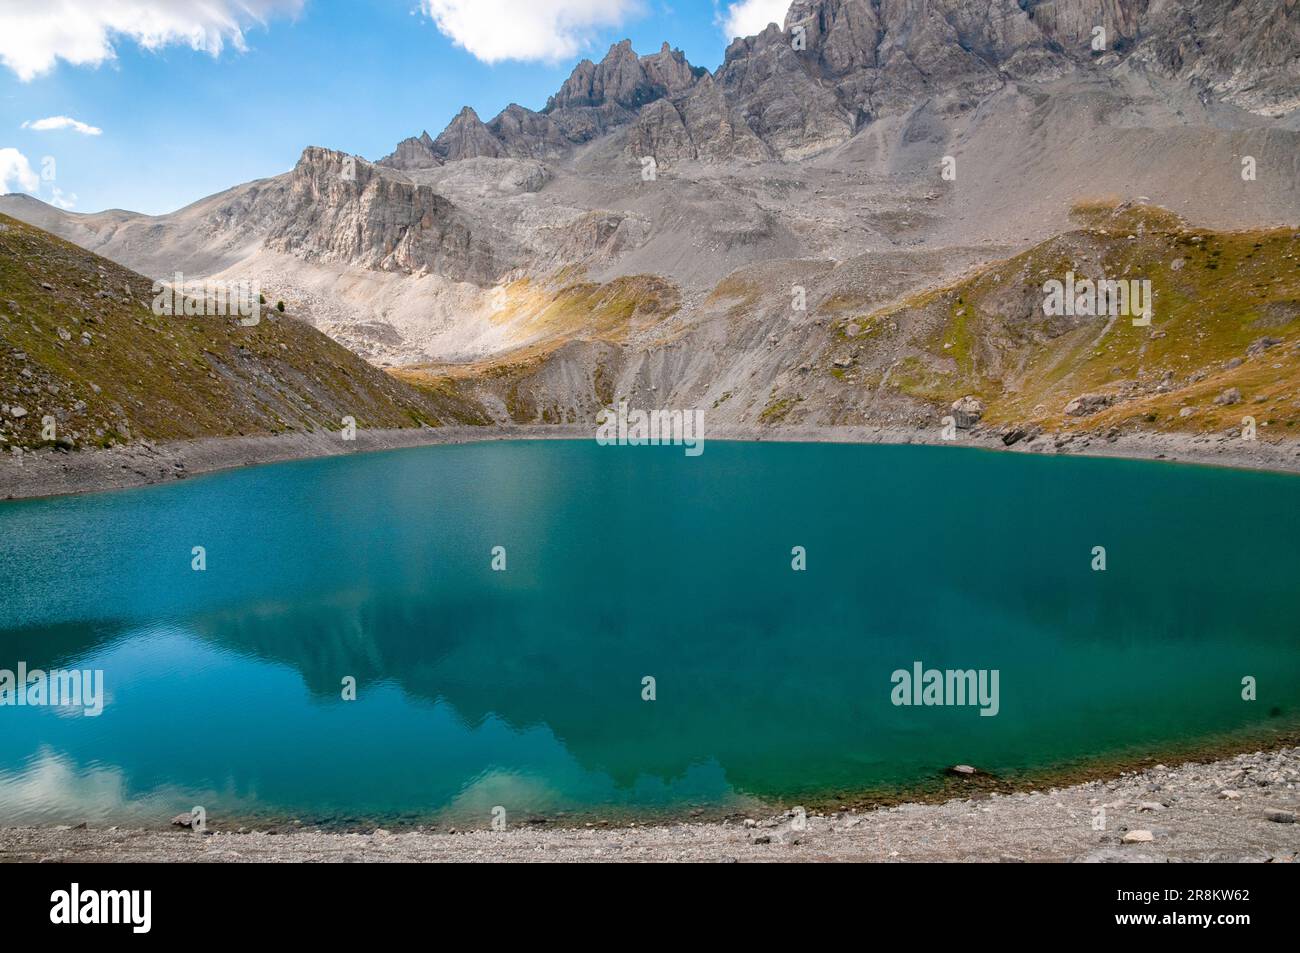 Lac de Sainte-Anne (2415 m), Parc naturel régional du Queyras, Ceillac, Hautes-Alpes (05), région Provence-Alpes-Côte d'Azur, France Banque D'Images